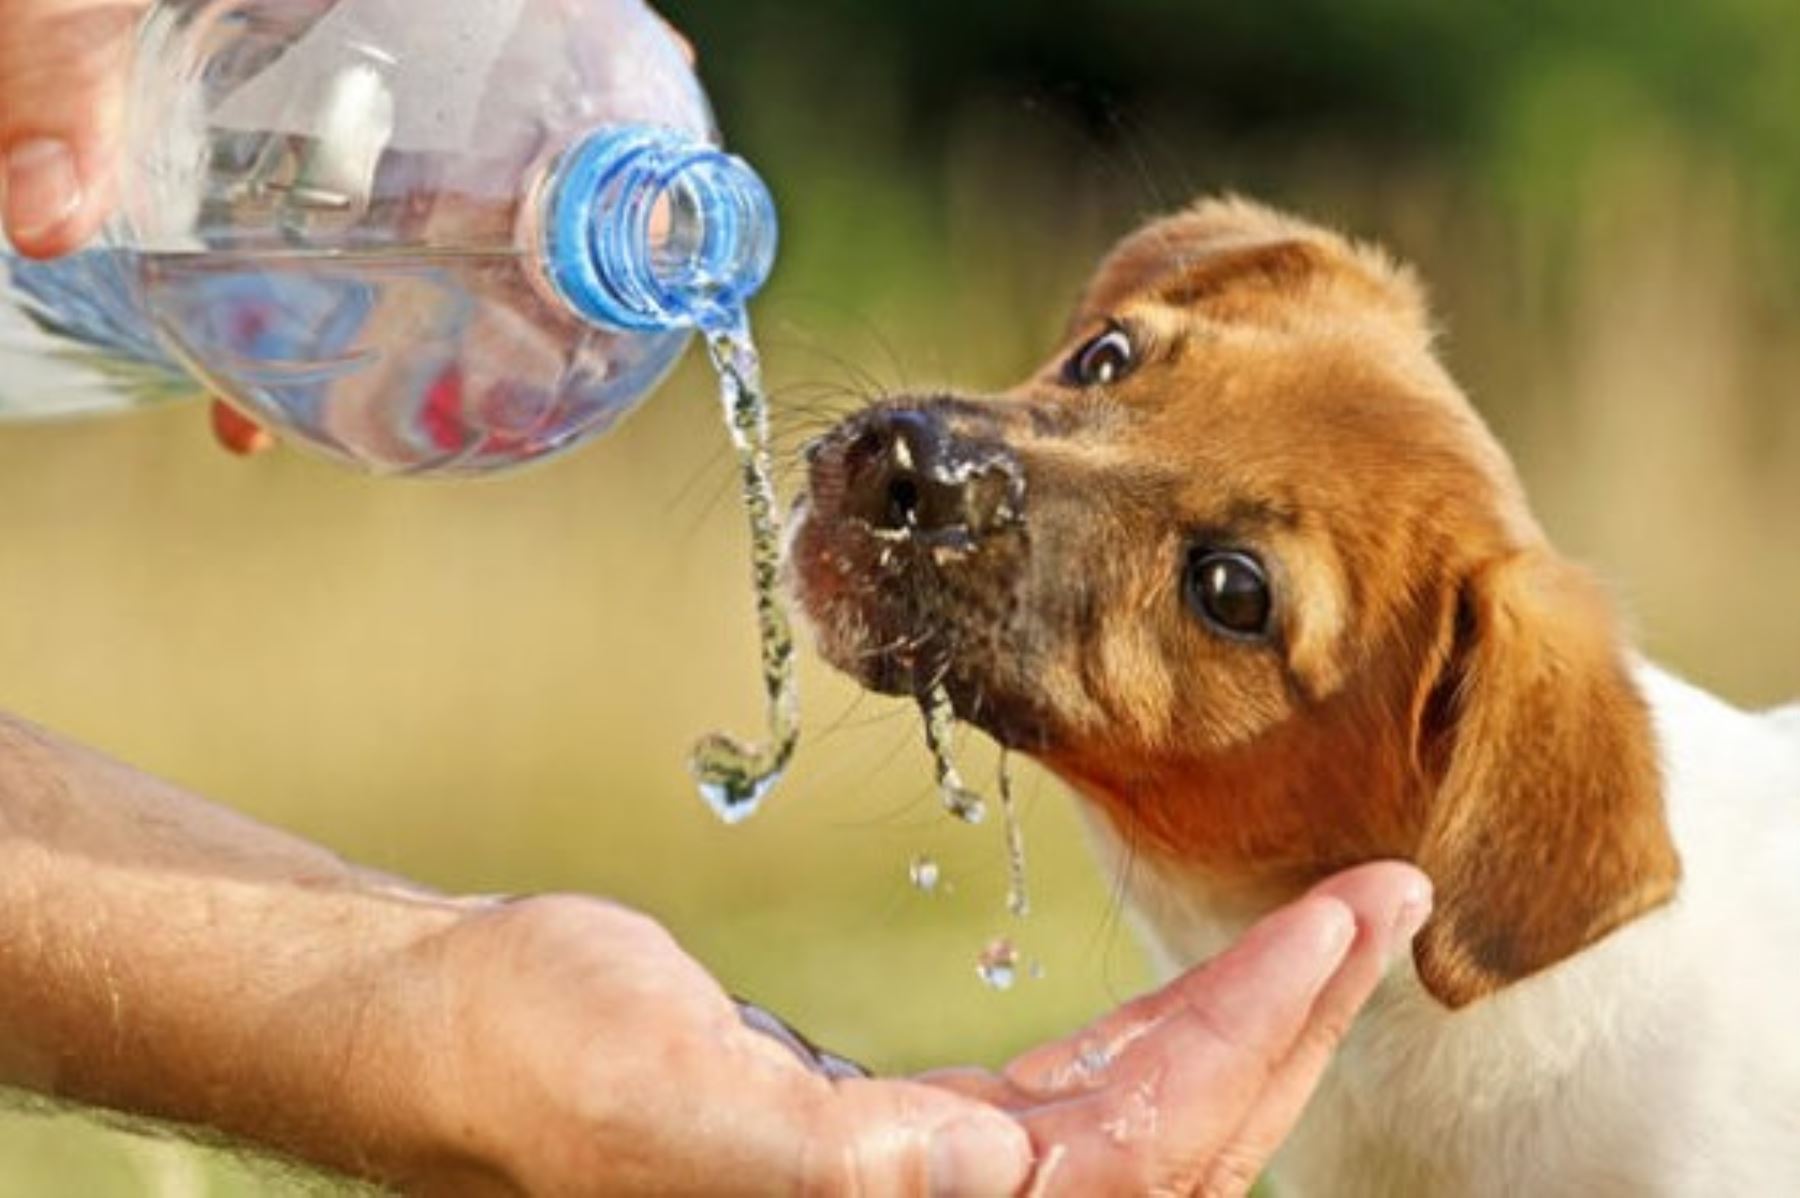 El golpe de calor puede causar la muerte de su mascota si le exige realizar actividades en horas de mucho calor y no lo hidrata.